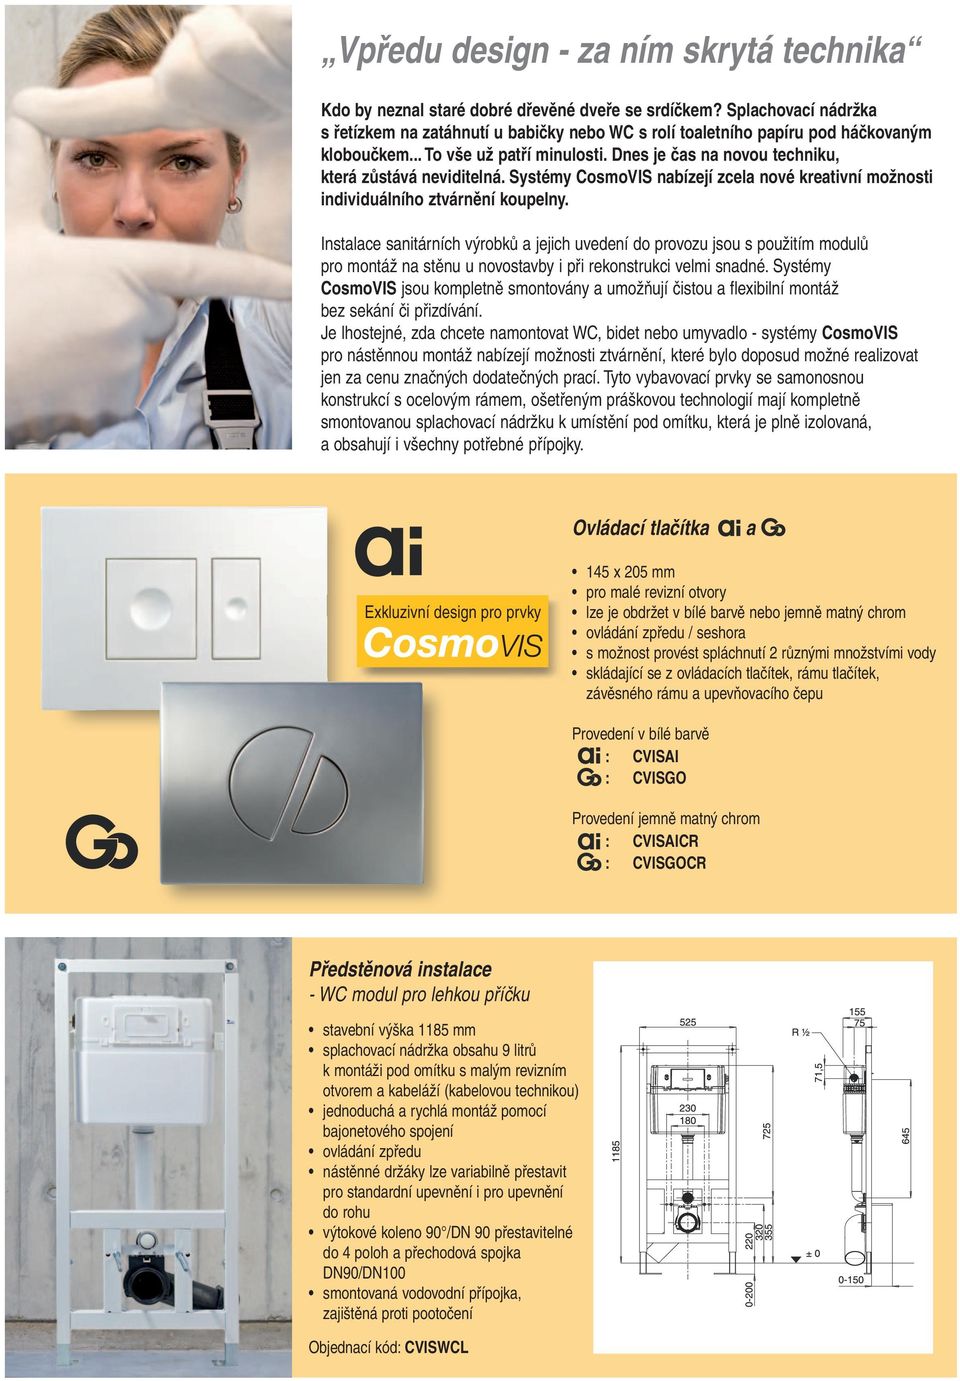 Systémy CosmoVIS nabízejí zcela nové kreativní možnosti individuálního ztvárnění koupelny.